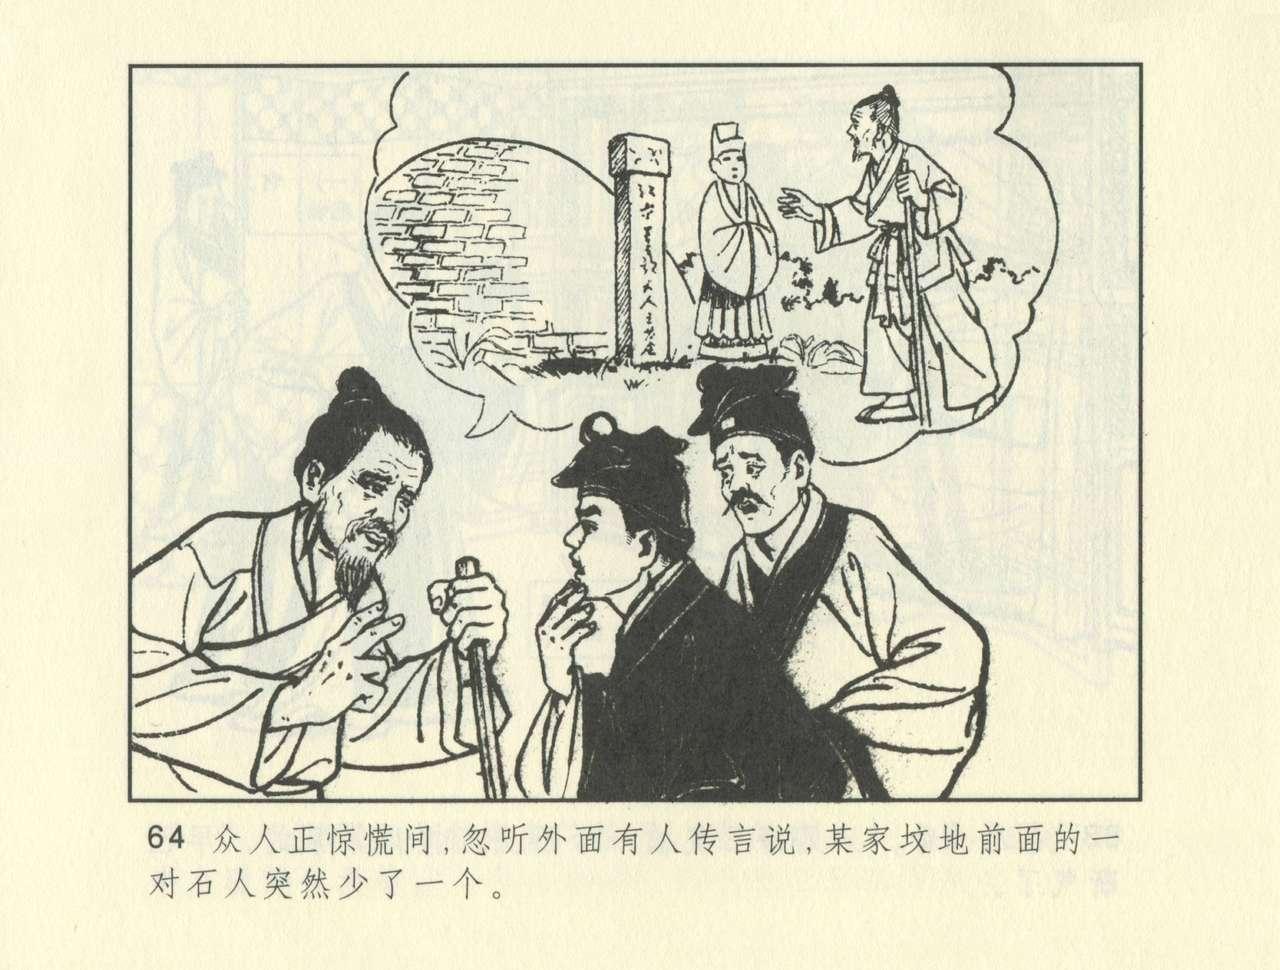 聊斋志异 张玮等绘 天津人民美术出版社 卷二十一 ~ 三十 273